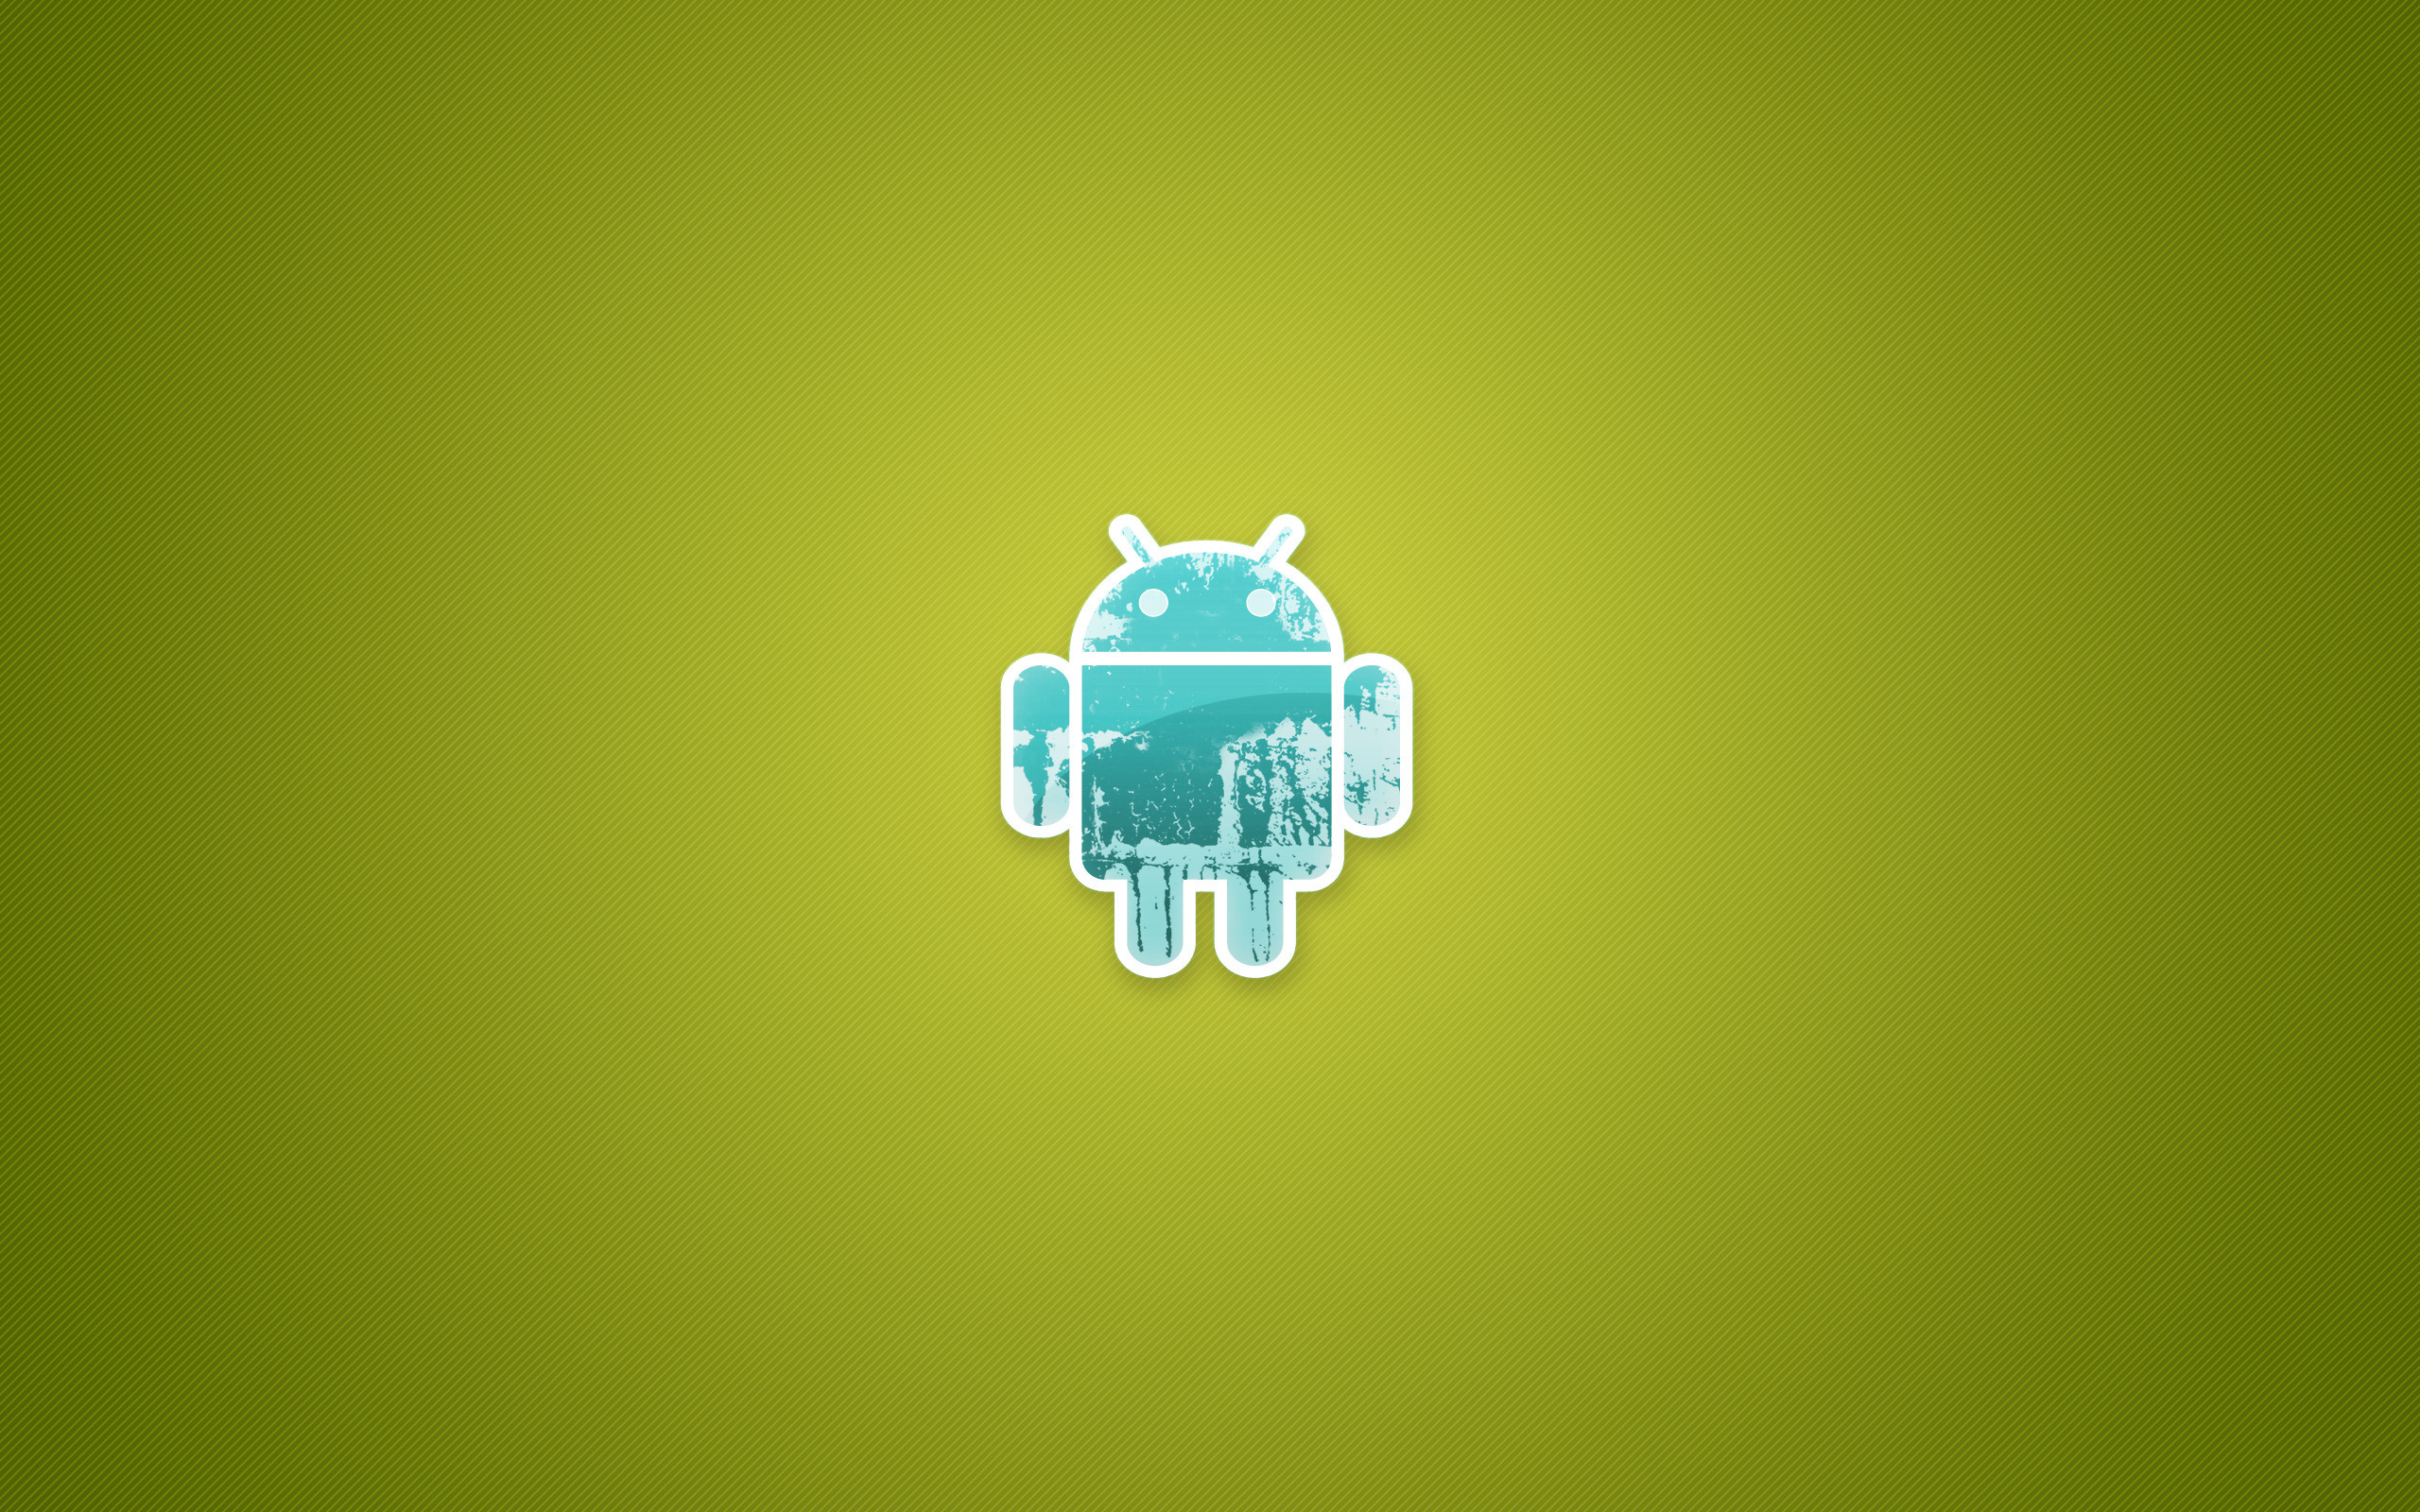 Обои на андроид. Обои на рабочий стол Android. Логотип андроид. Обои на планшет андроид. Минималистичный андроид